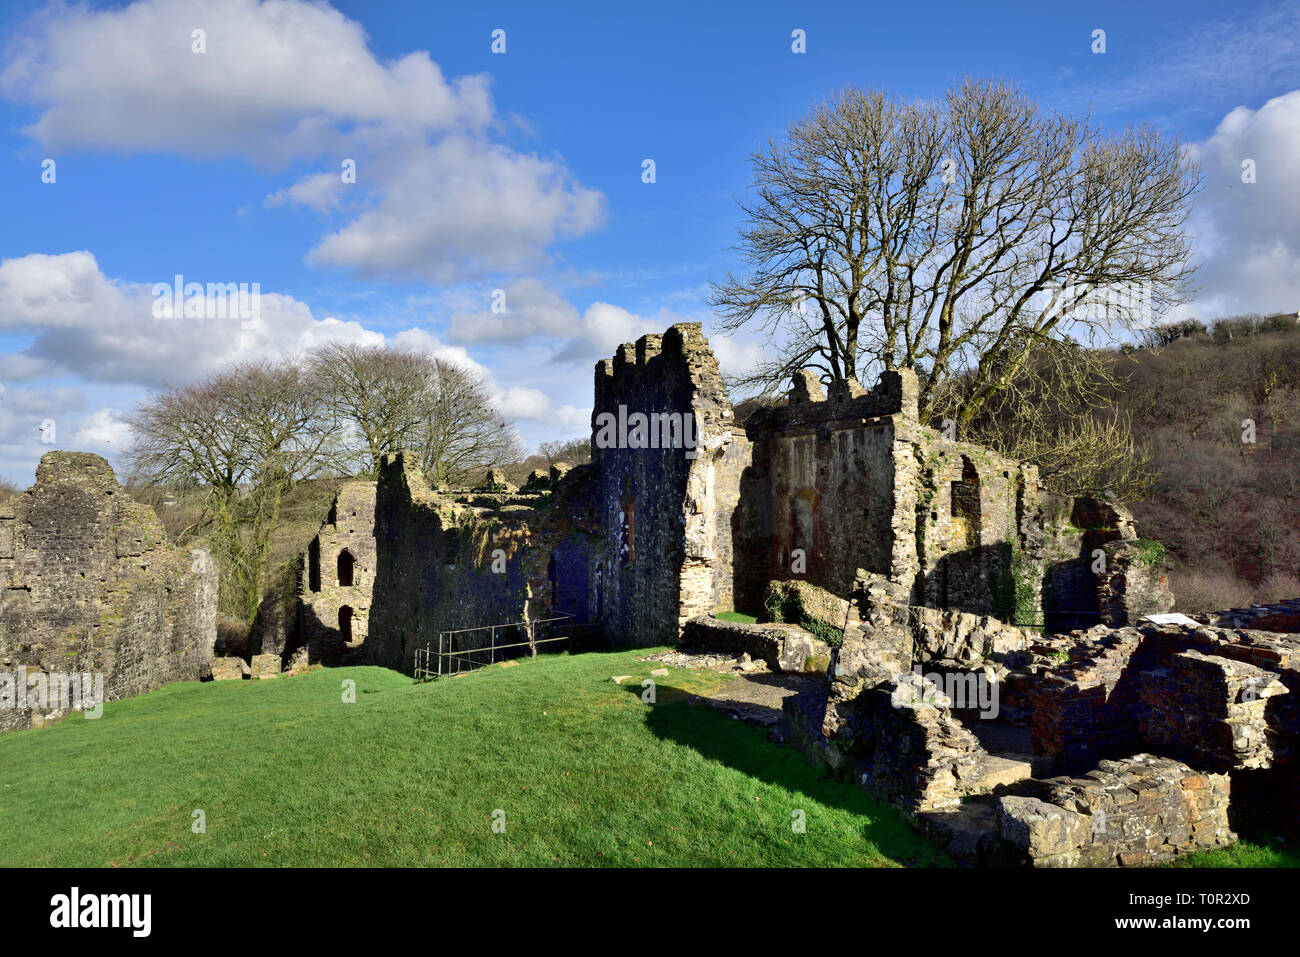 Okehampton castle ruins, Devon, UK Stock Photo